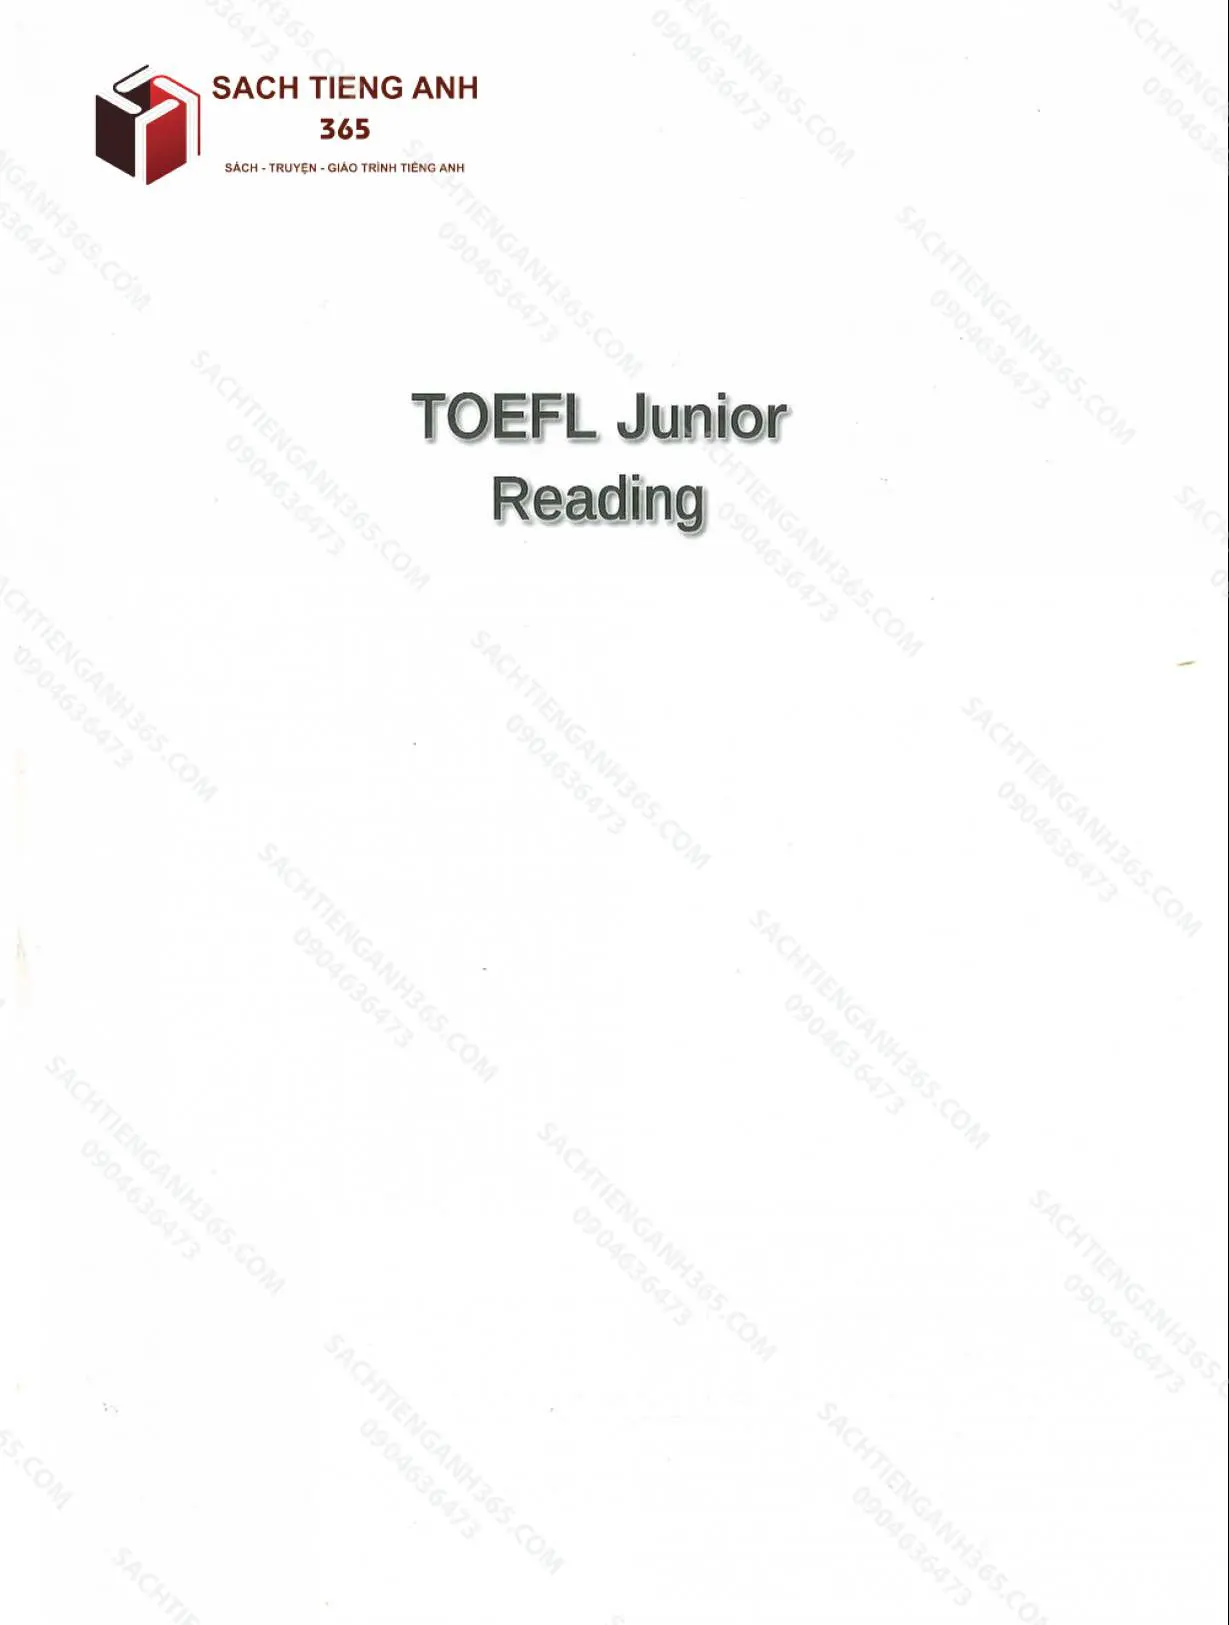 toefl junior_reading_001